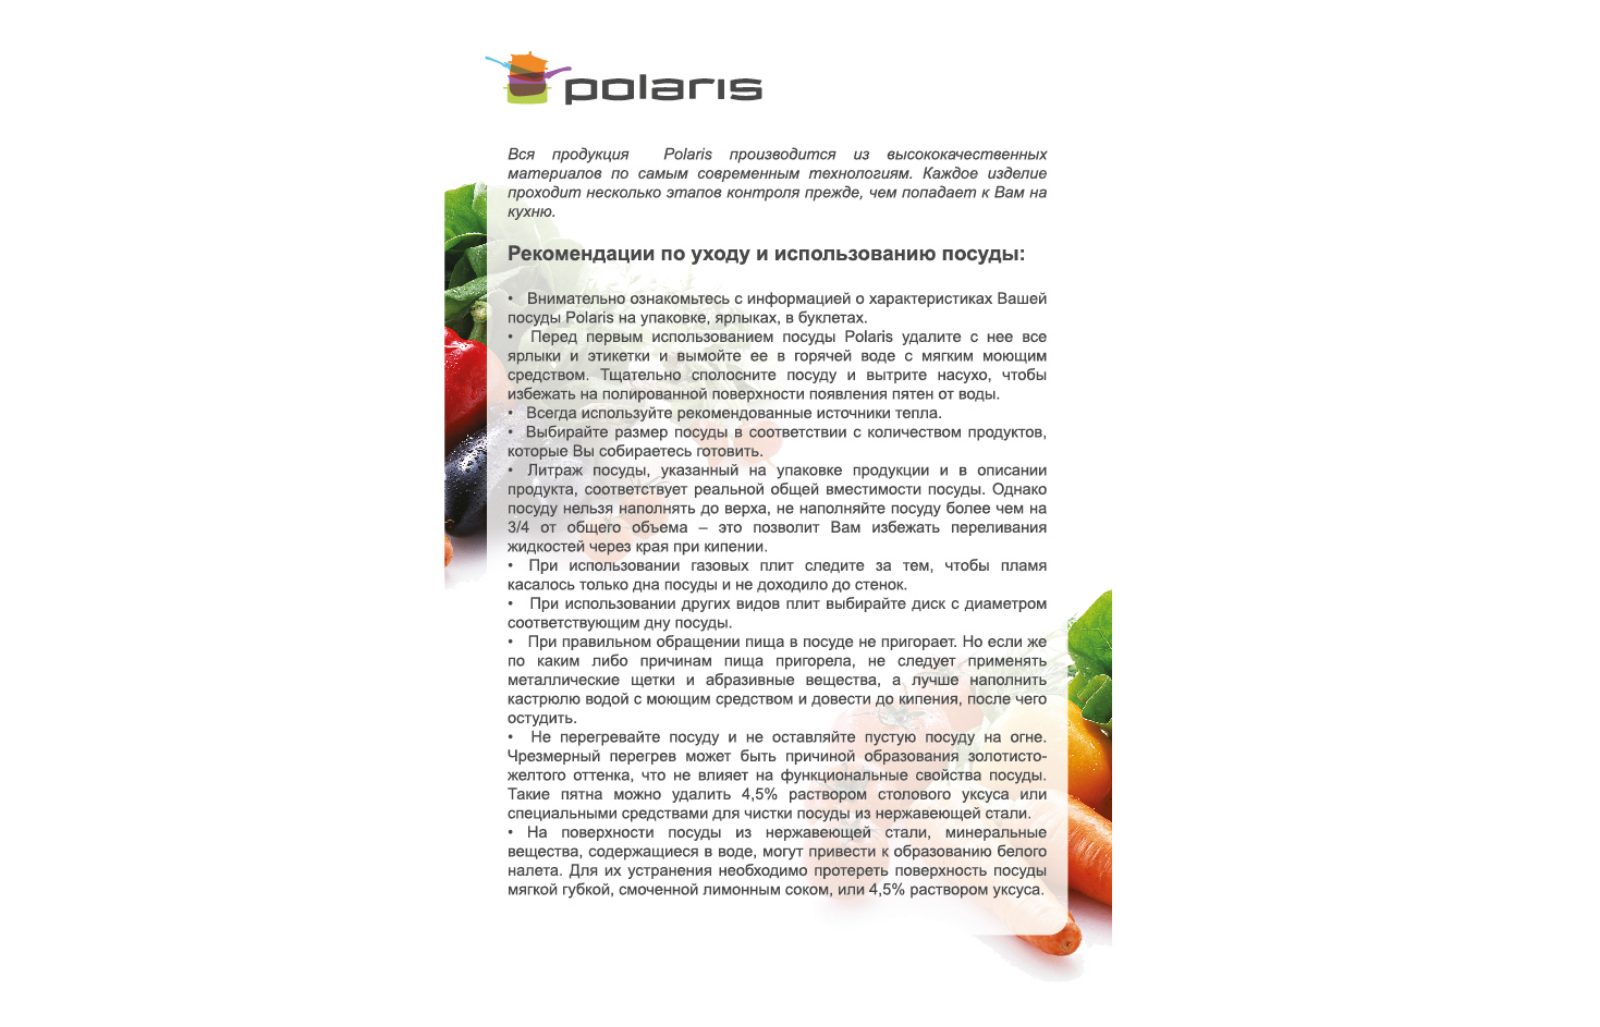 Polaris FL-24C User Manual